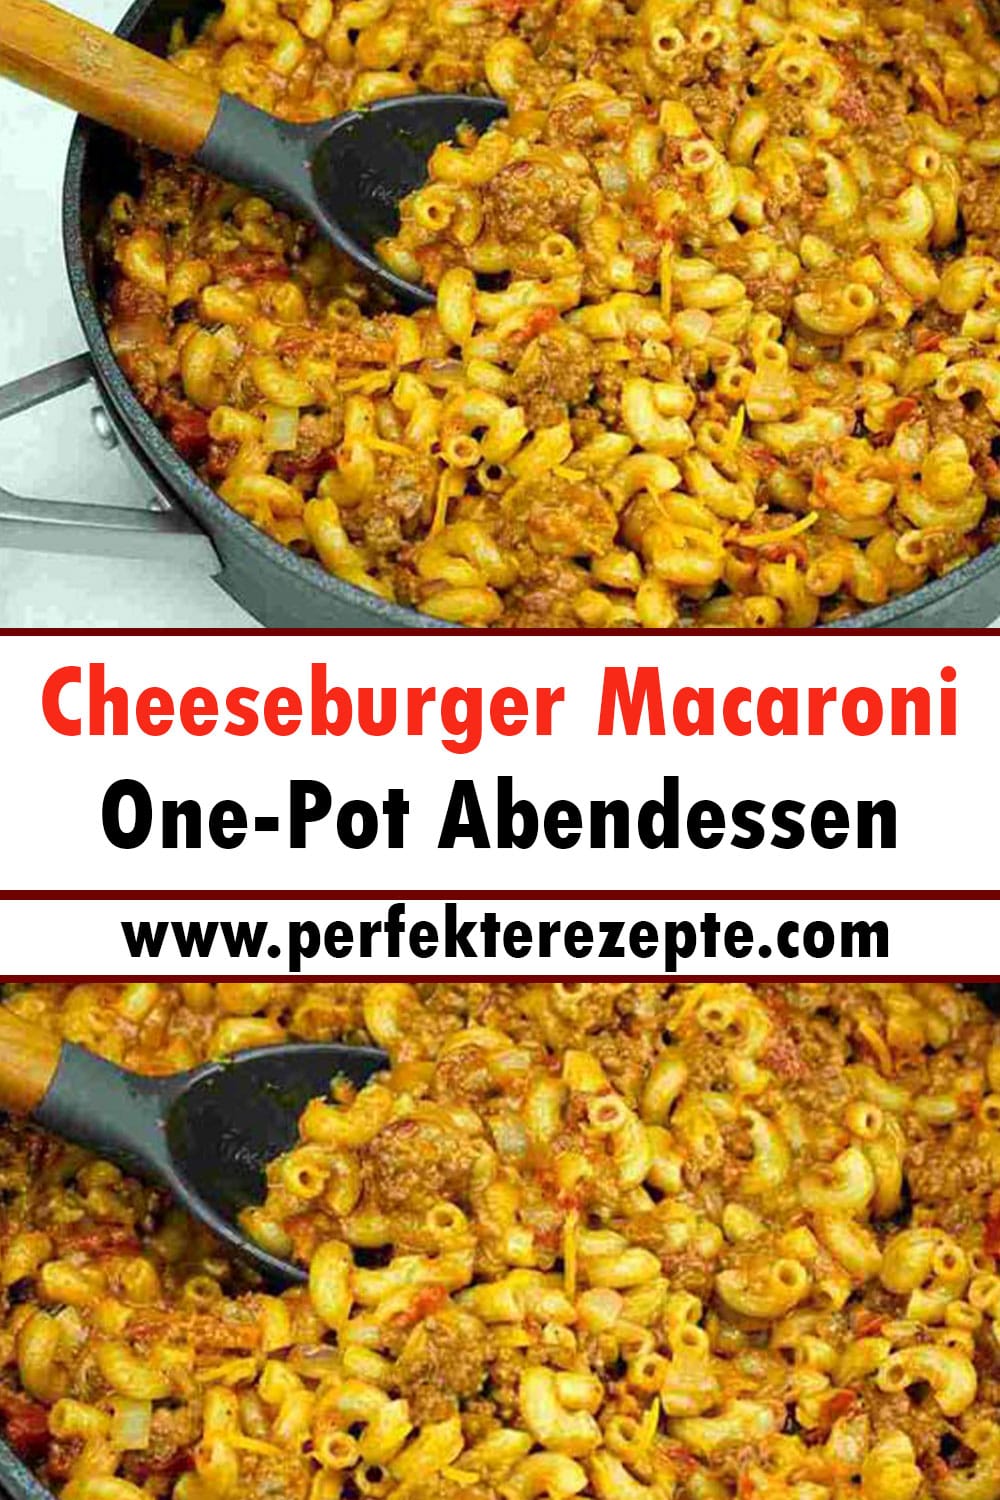 Cheeseburger Macaroni Rezept One-Pot Abendessen